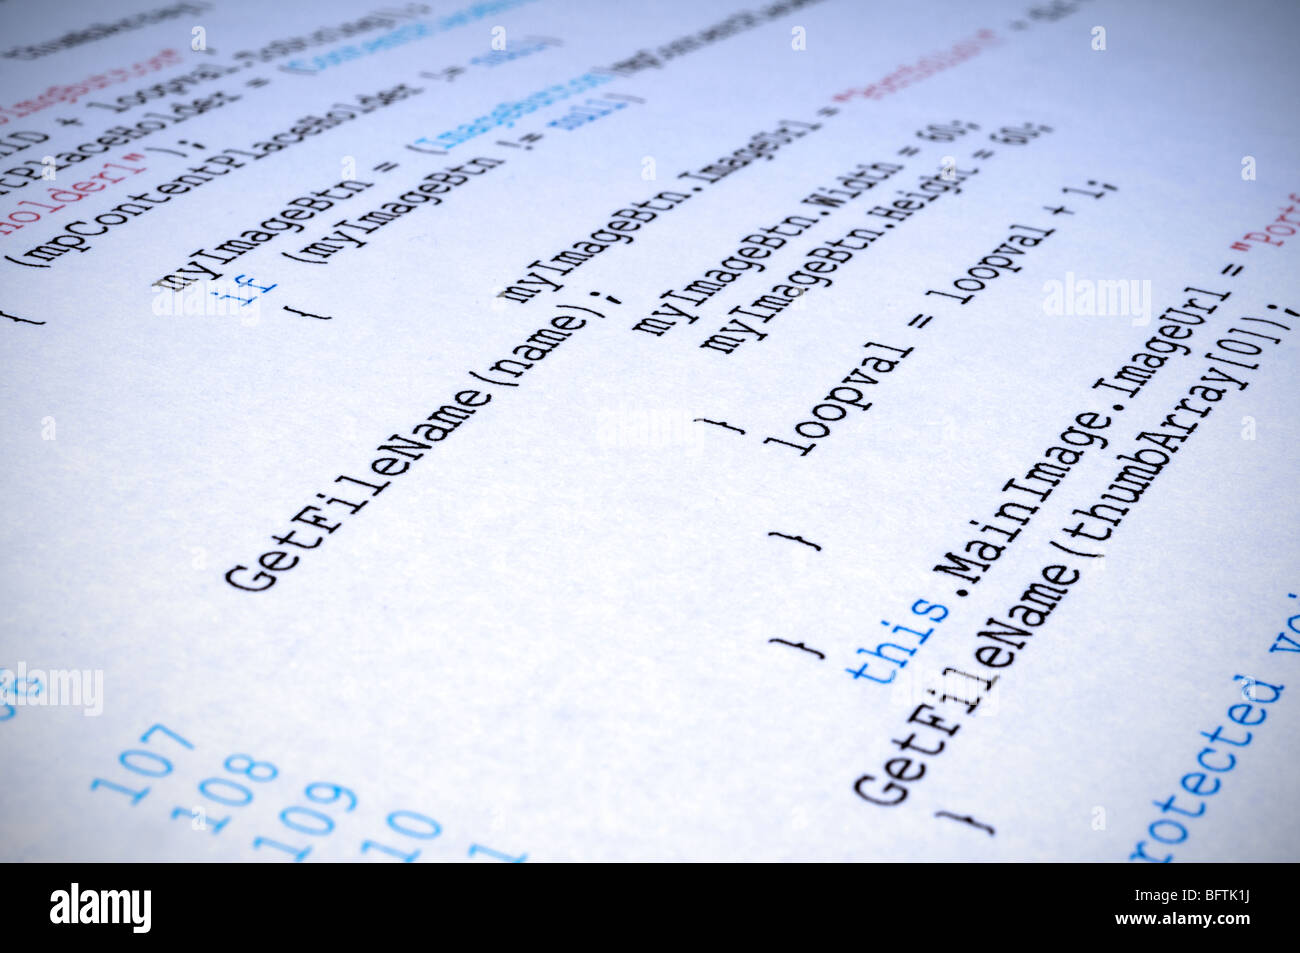 Una copia impresa de C# el código de programación informática idioma Foto de stock